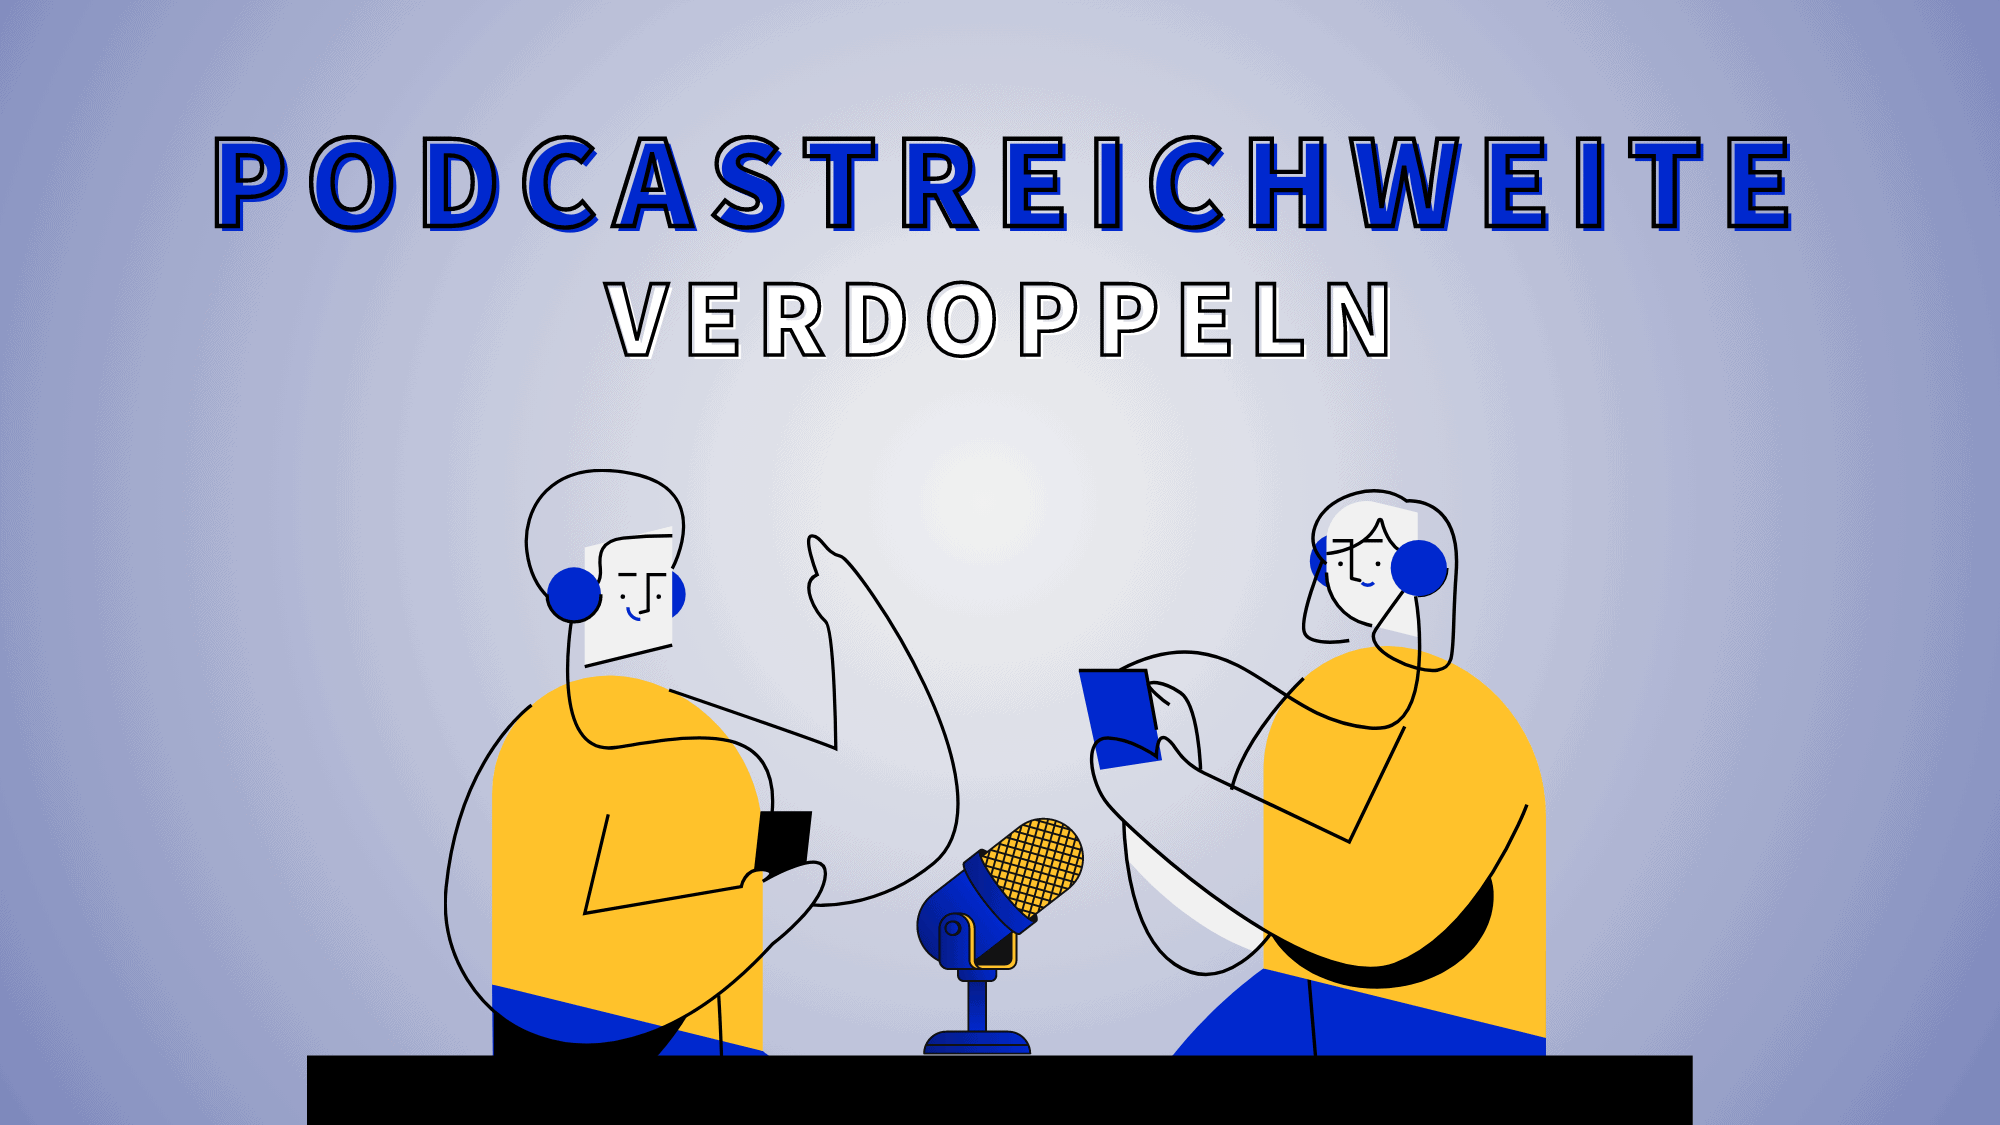 Podcast-Reichweite erhöhen